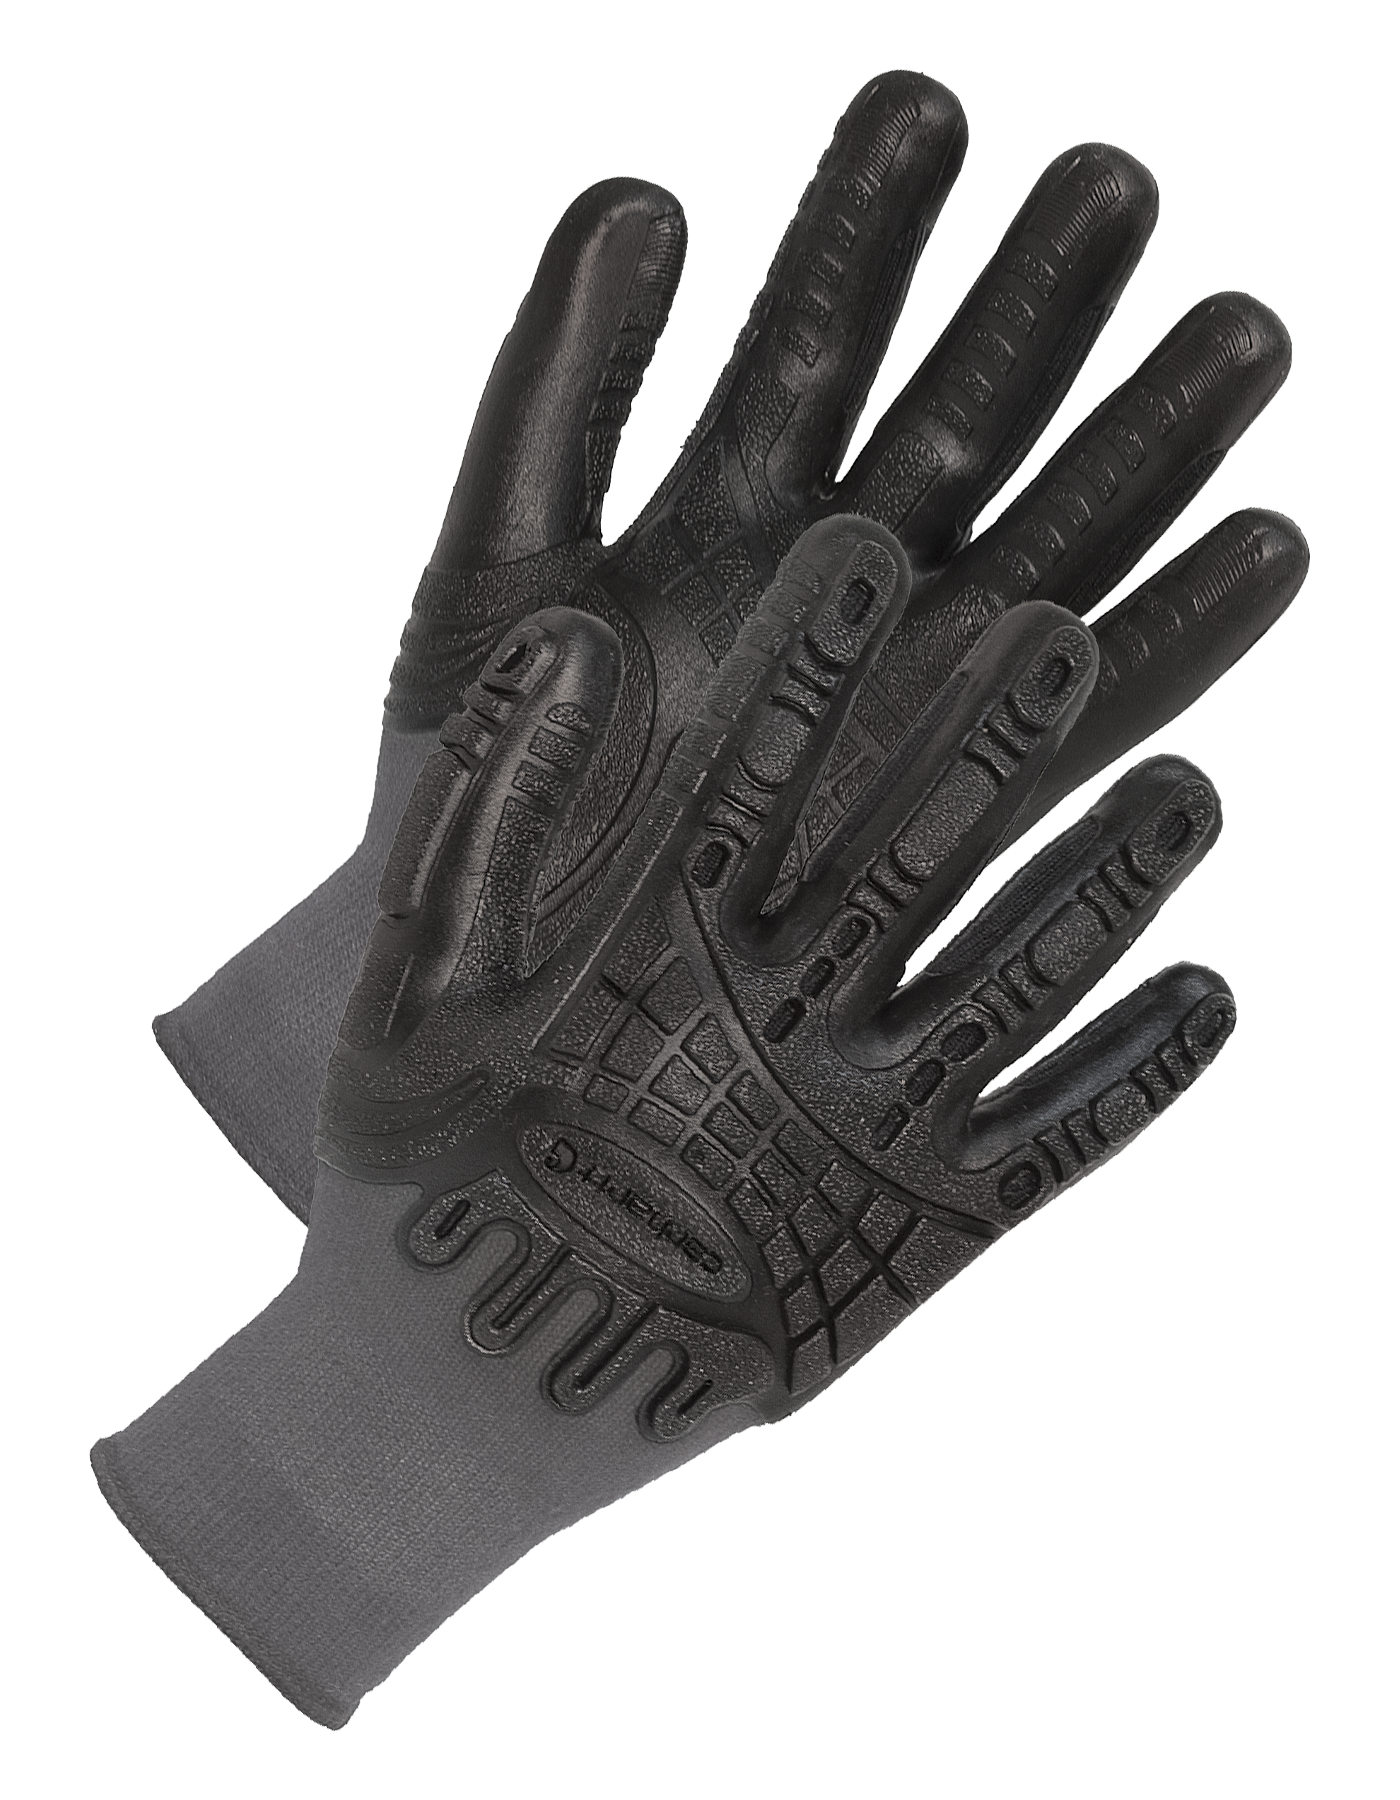 Carhartt C-Grip Impact Gloves for Men